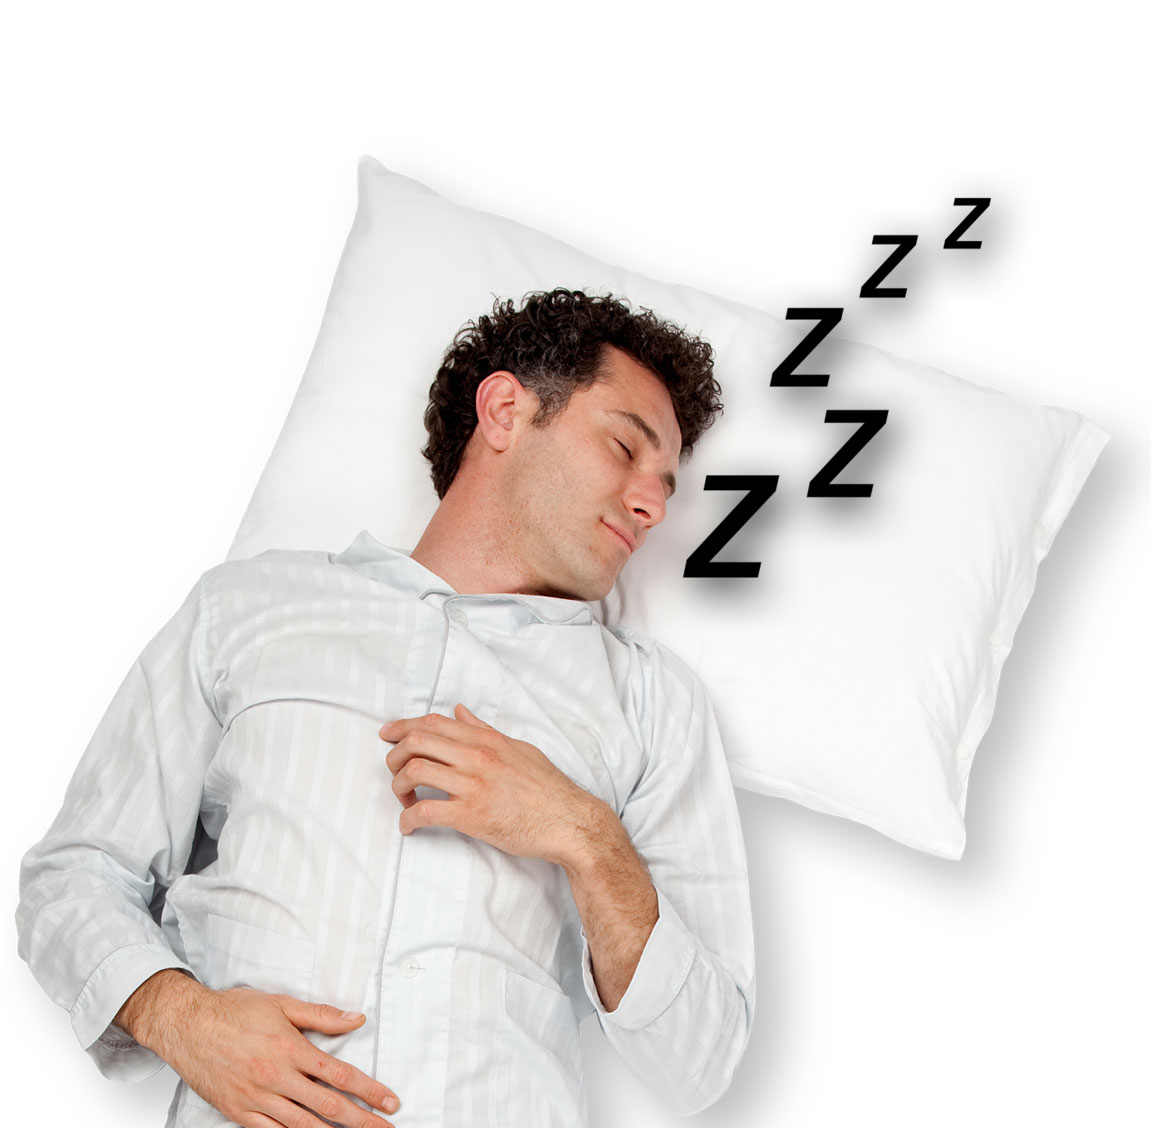 Skvelé triky na spánok, o ktorých ste pravdepodobne nikdy nepočuli